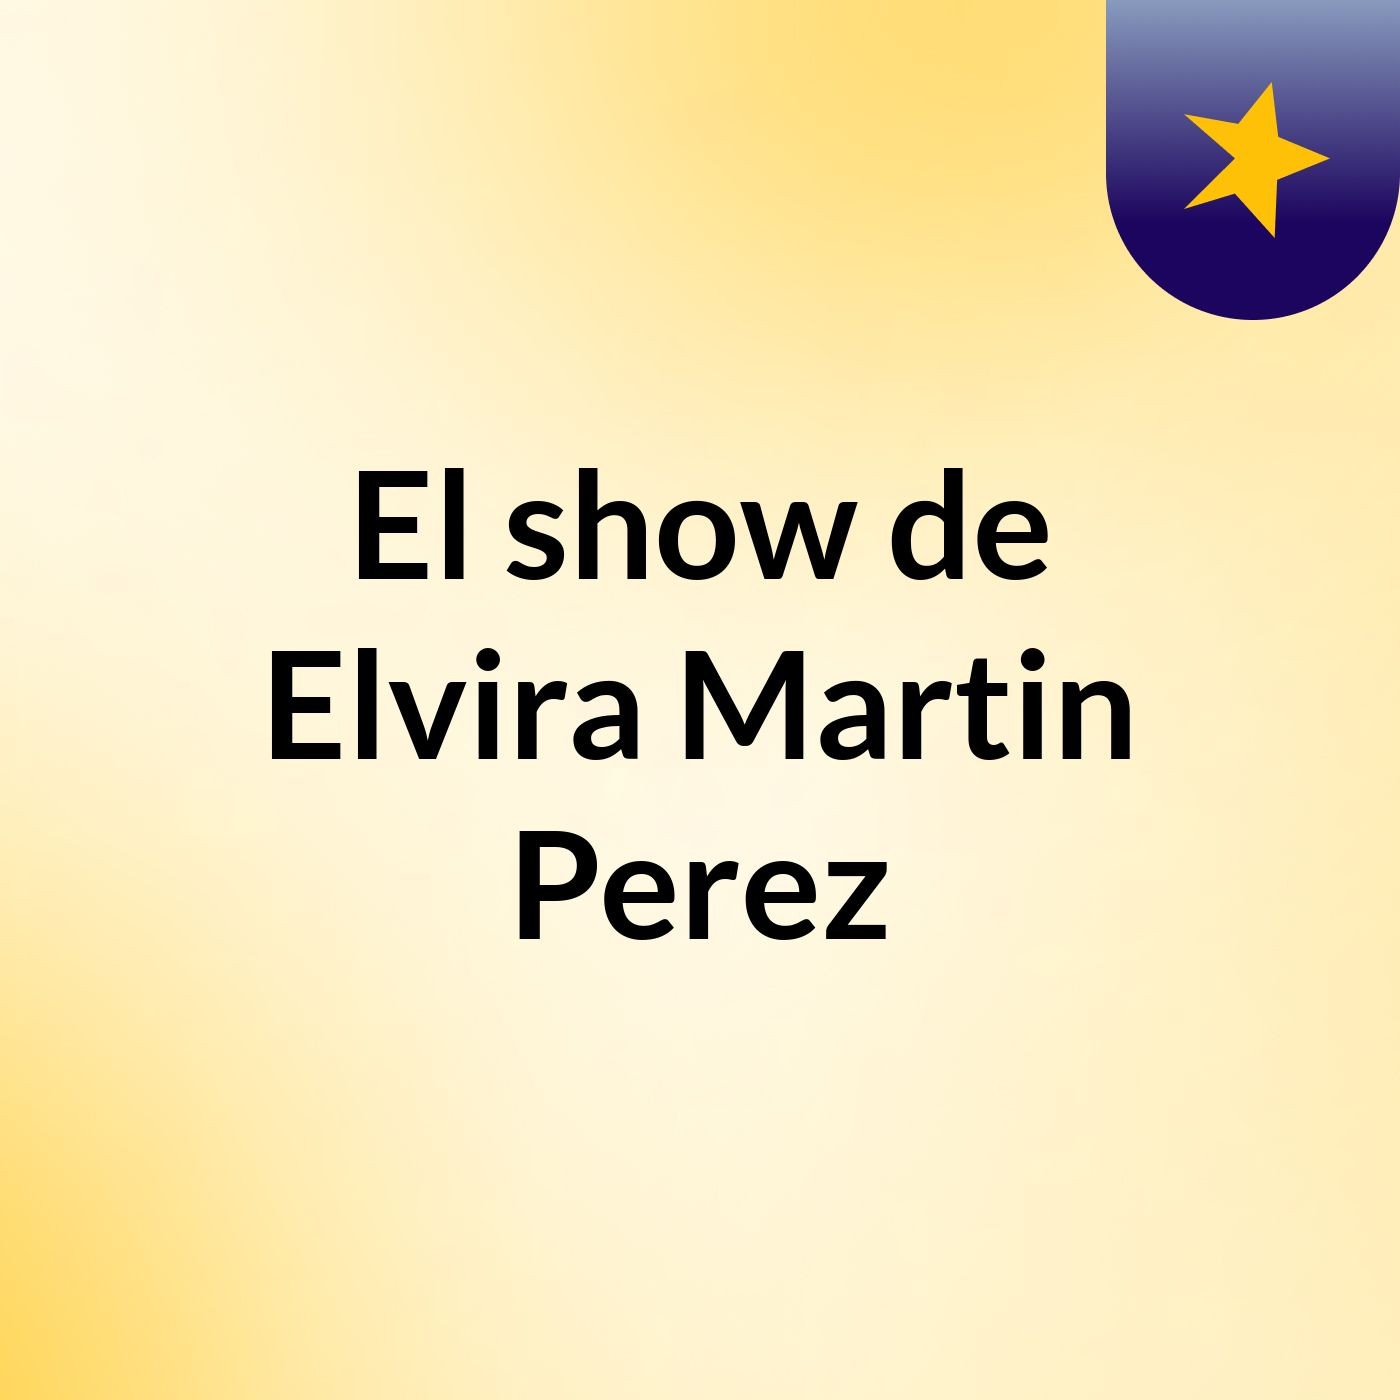 El show de Elvira Martin Perez